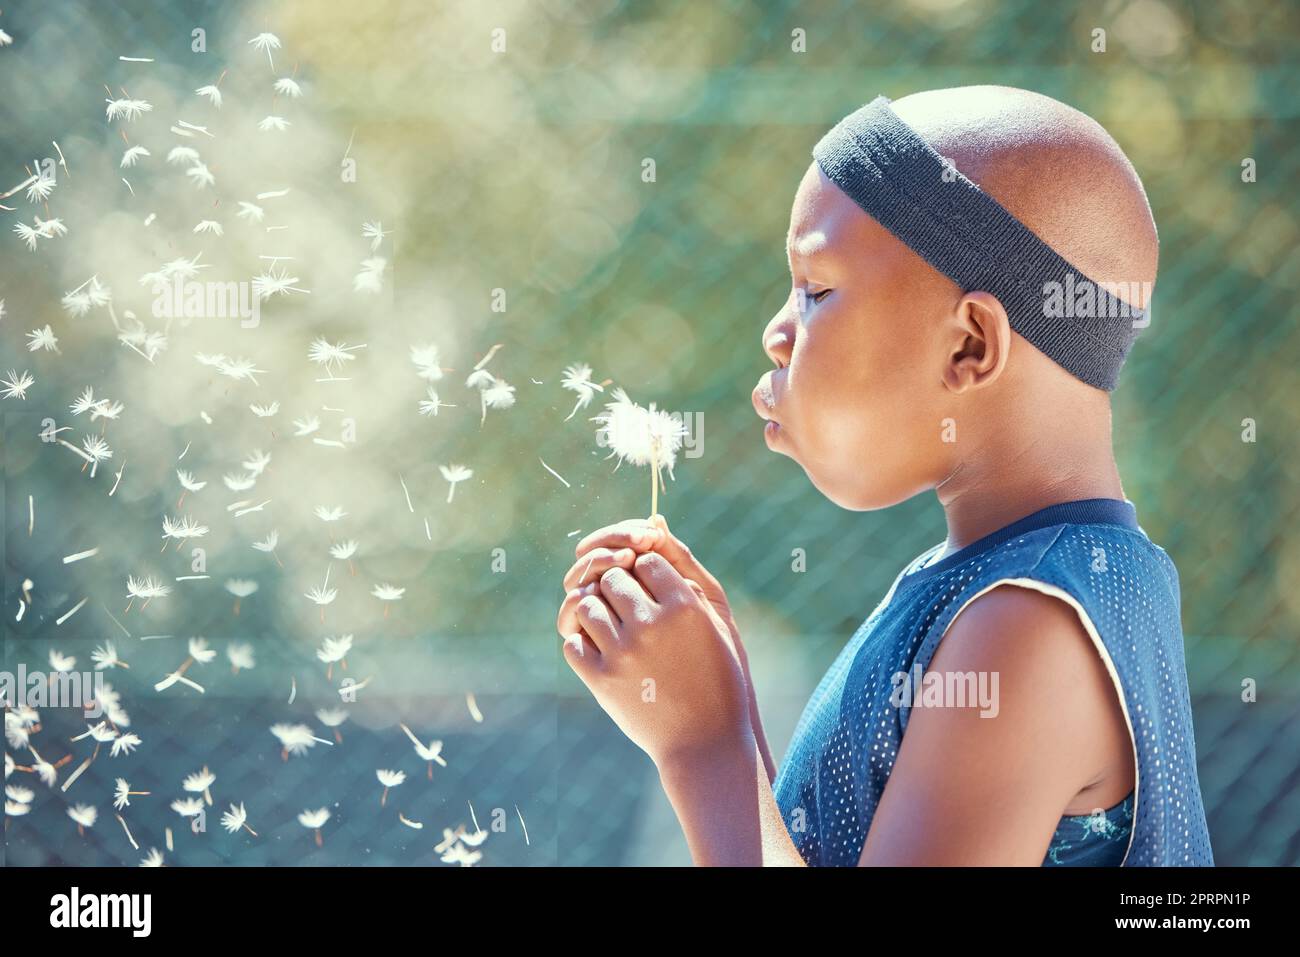 Junge, einen Löwenzahn blasen und sich draußen auf einem Basketballplatz mit einer magischen Blume etwas mit einem schwarzen Kind wünschen. Ein afrikanisches Kind genießt Freiheit, Harmonie und träumt davon, ein professioneller Spieler zu sein Stockfoto